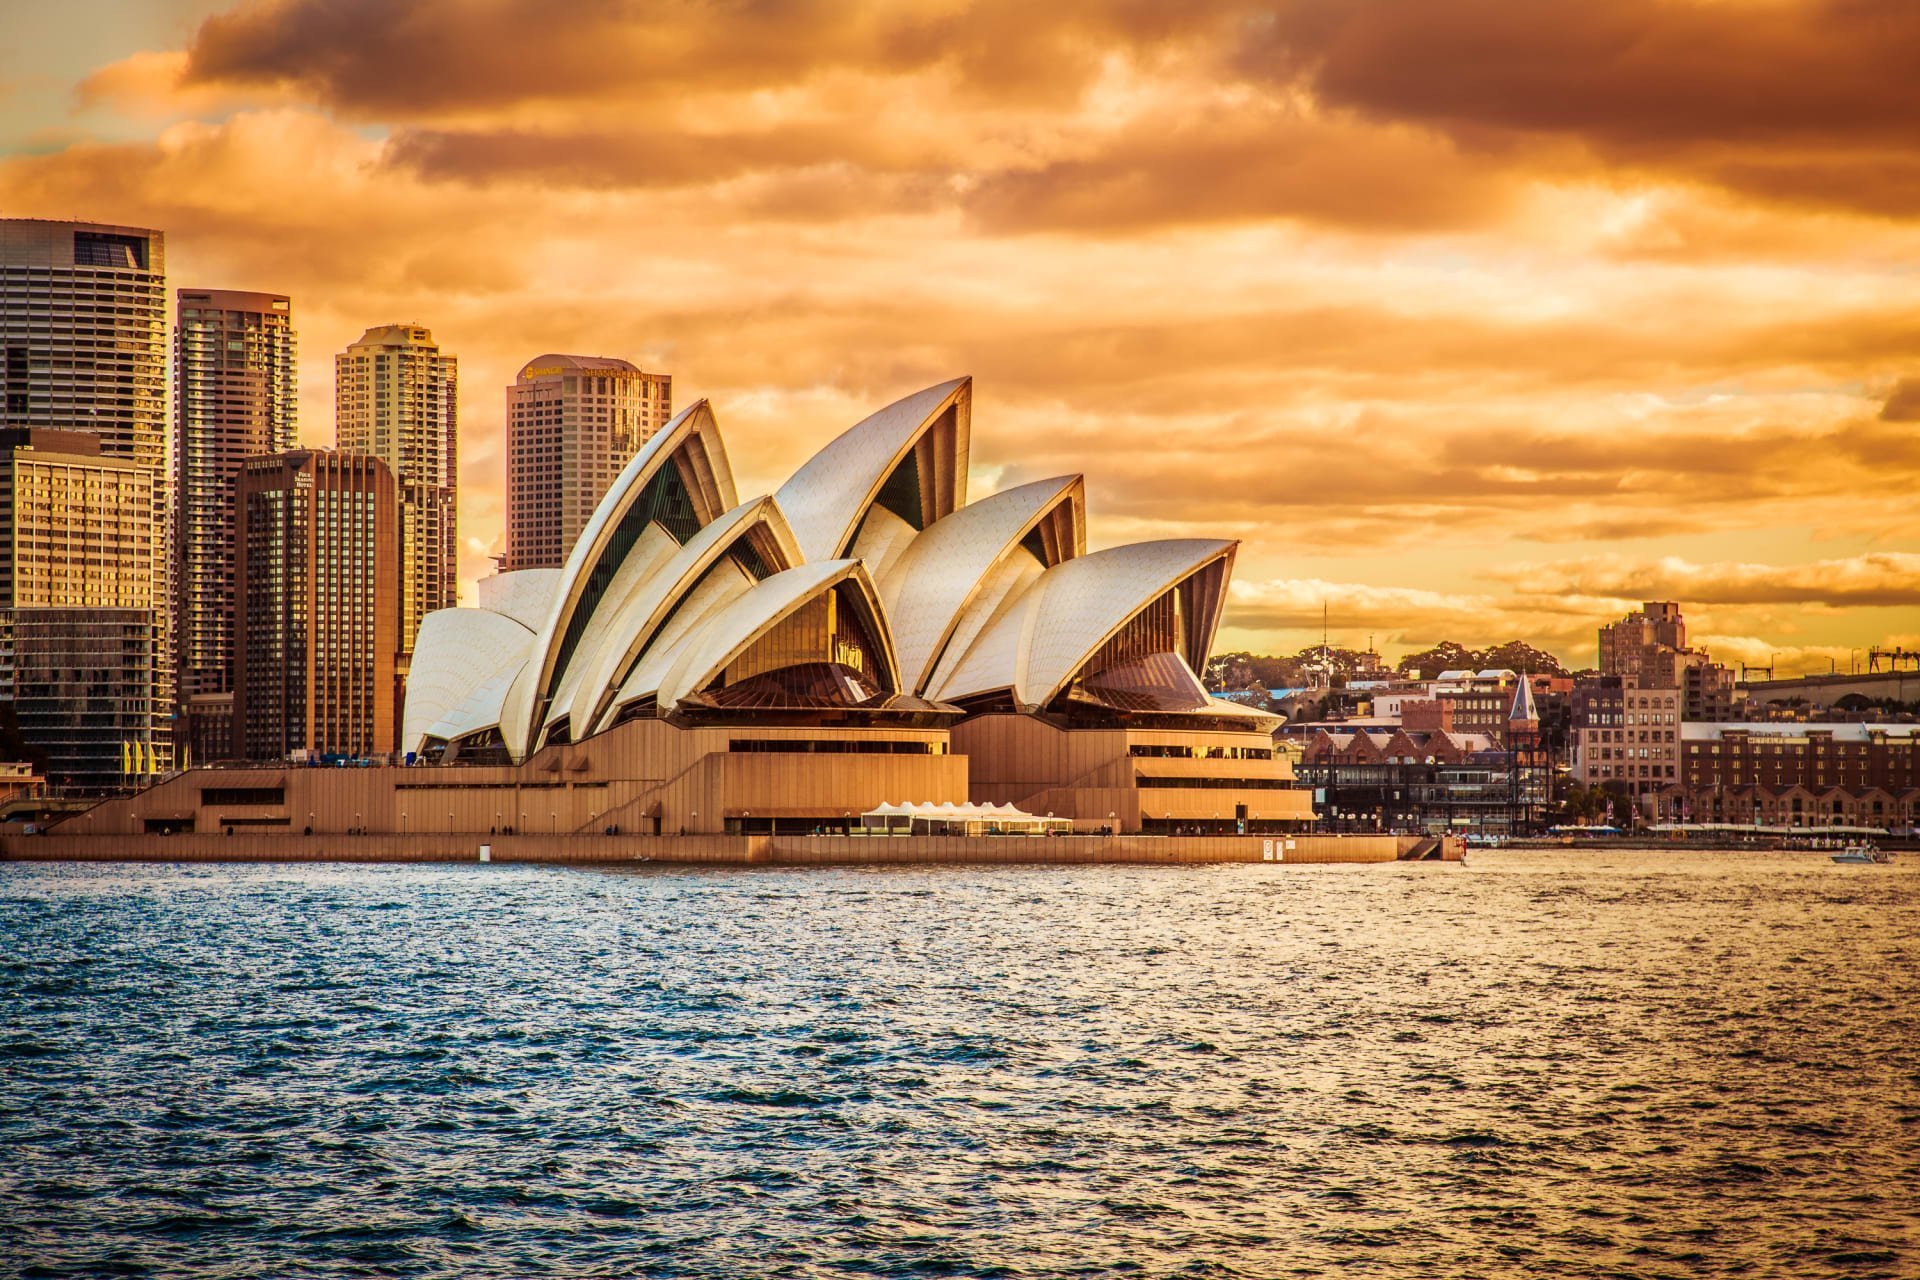 Австралия. Сиднейский оперный театр Австралия. Сиднейский оперный театр- г.Сидней (Австралия). Опера Хаус Сидней Австралия. Сиднейский оперный театр Австралия закат.